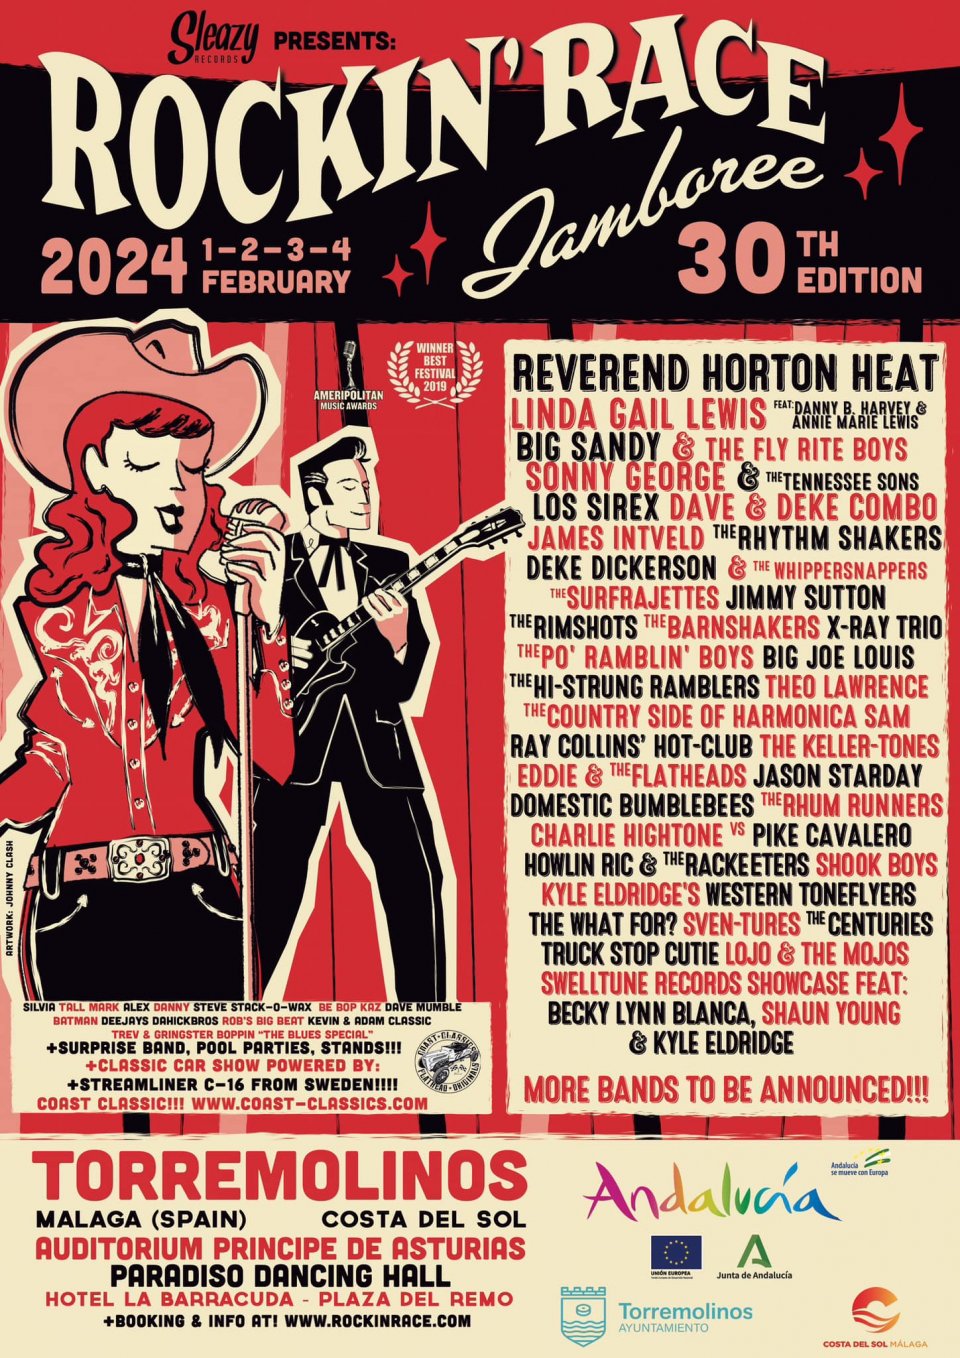 Conciertos del Festival Rockin' Race Jamboree 2024 - Conciertos.Club